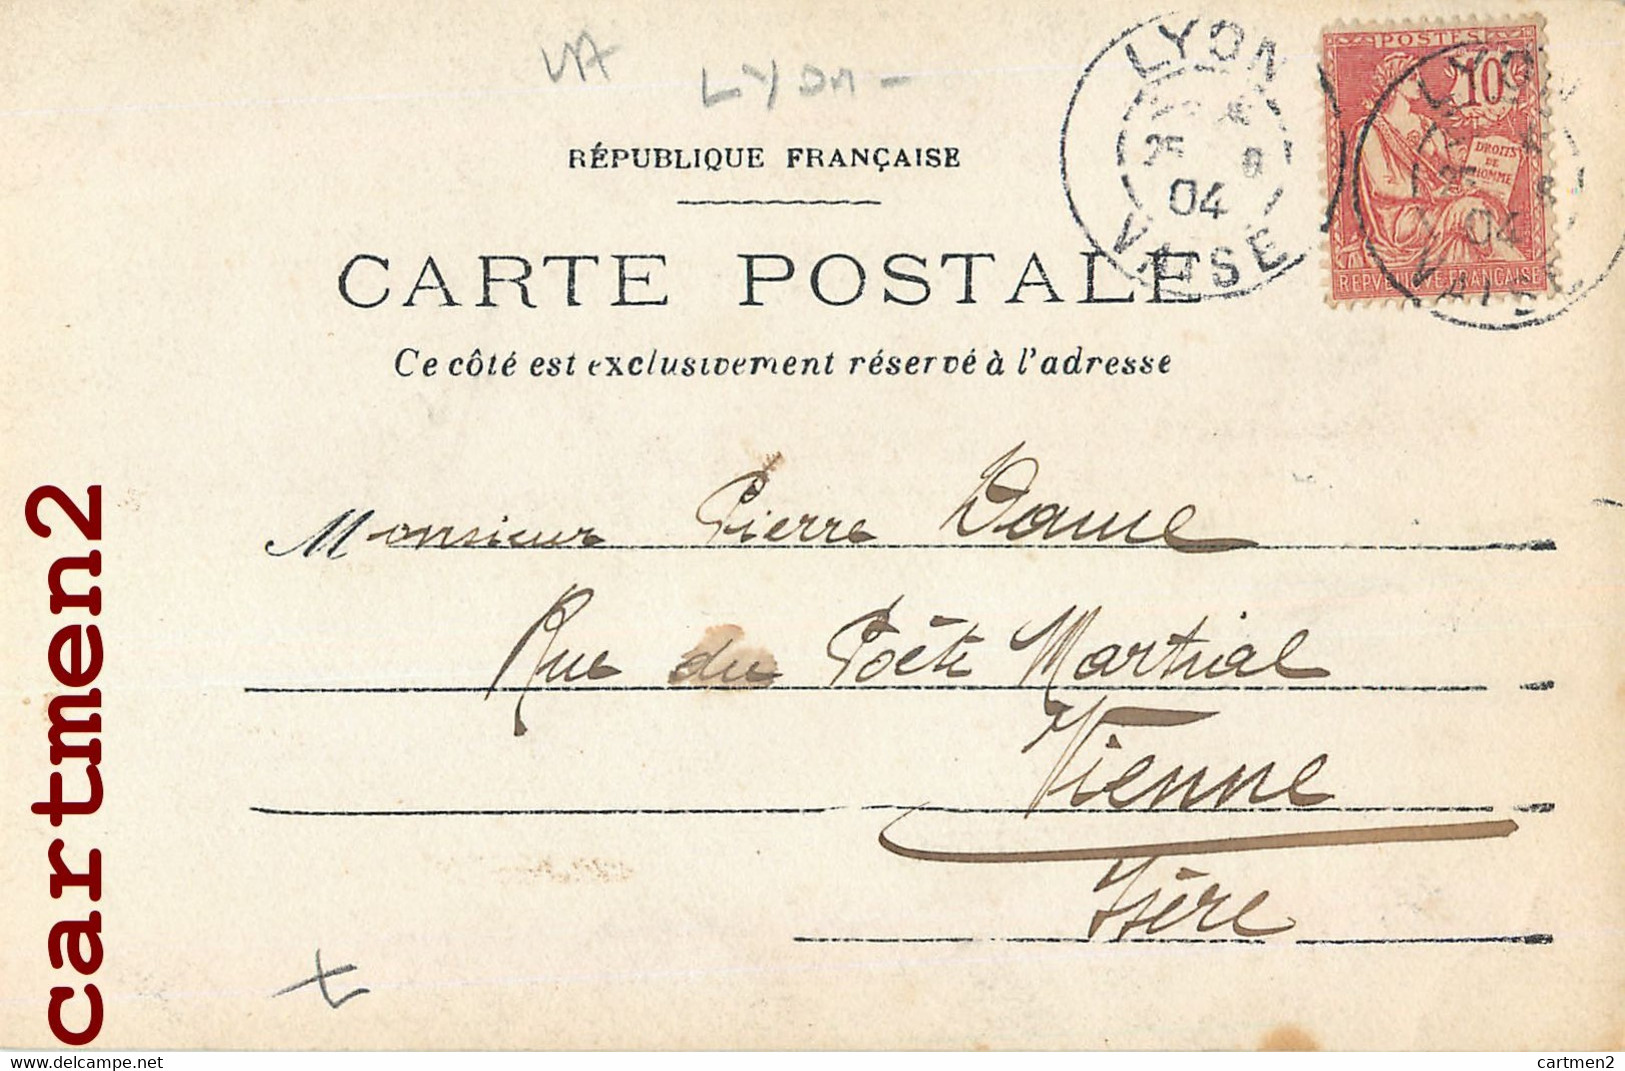 CARTE PHOTO 1904 : LYON VAISE " FAMILLE DANS UN BOIS " 69009 RHONE - Lyon 9